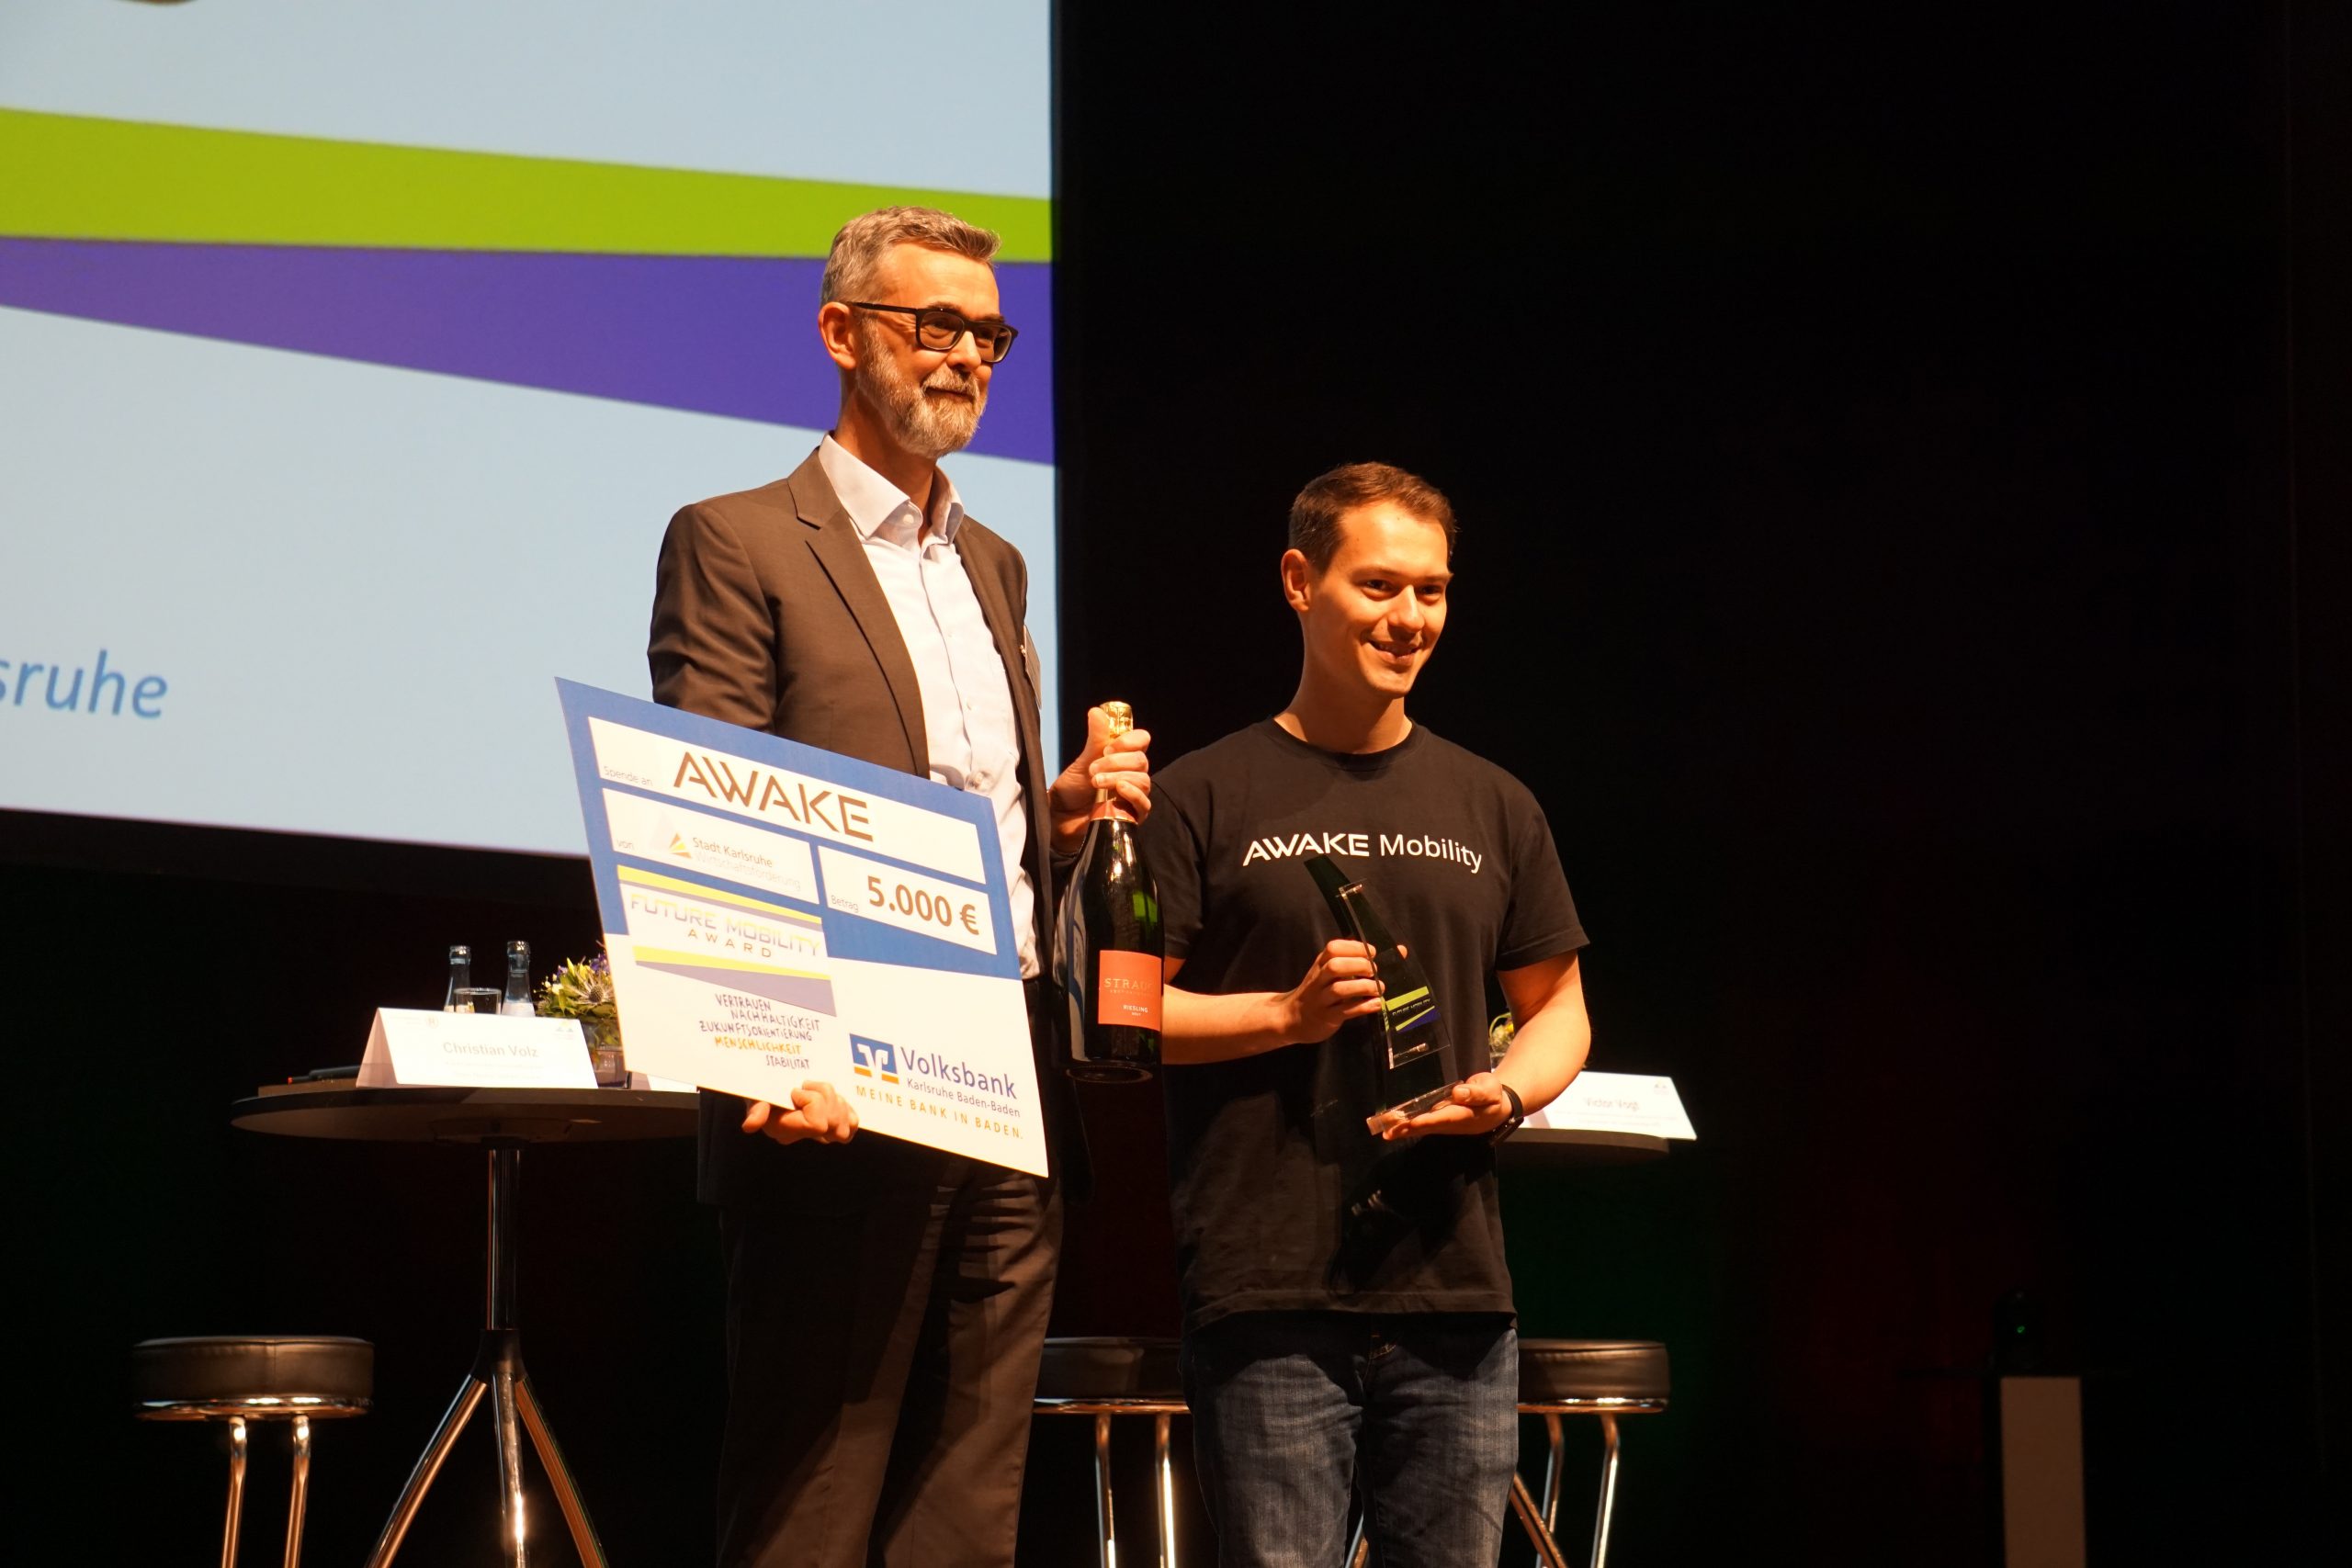 AWAKE Mobility ist der diesjährige Preisträger des Future Mobility Award. Das Münchner Start-up, das sich auf Fahrzeuganalysen für Busse spezialisiert hat, wurde am 17.05.2022 im Rahmen der Regionalkonferenz Mobilitätswende in Ludwigshafen feierlich von Michael Kaiser, Direktor der Wirtschaftsförderung der Stadt Karlsruhe, bekanntgegeben.